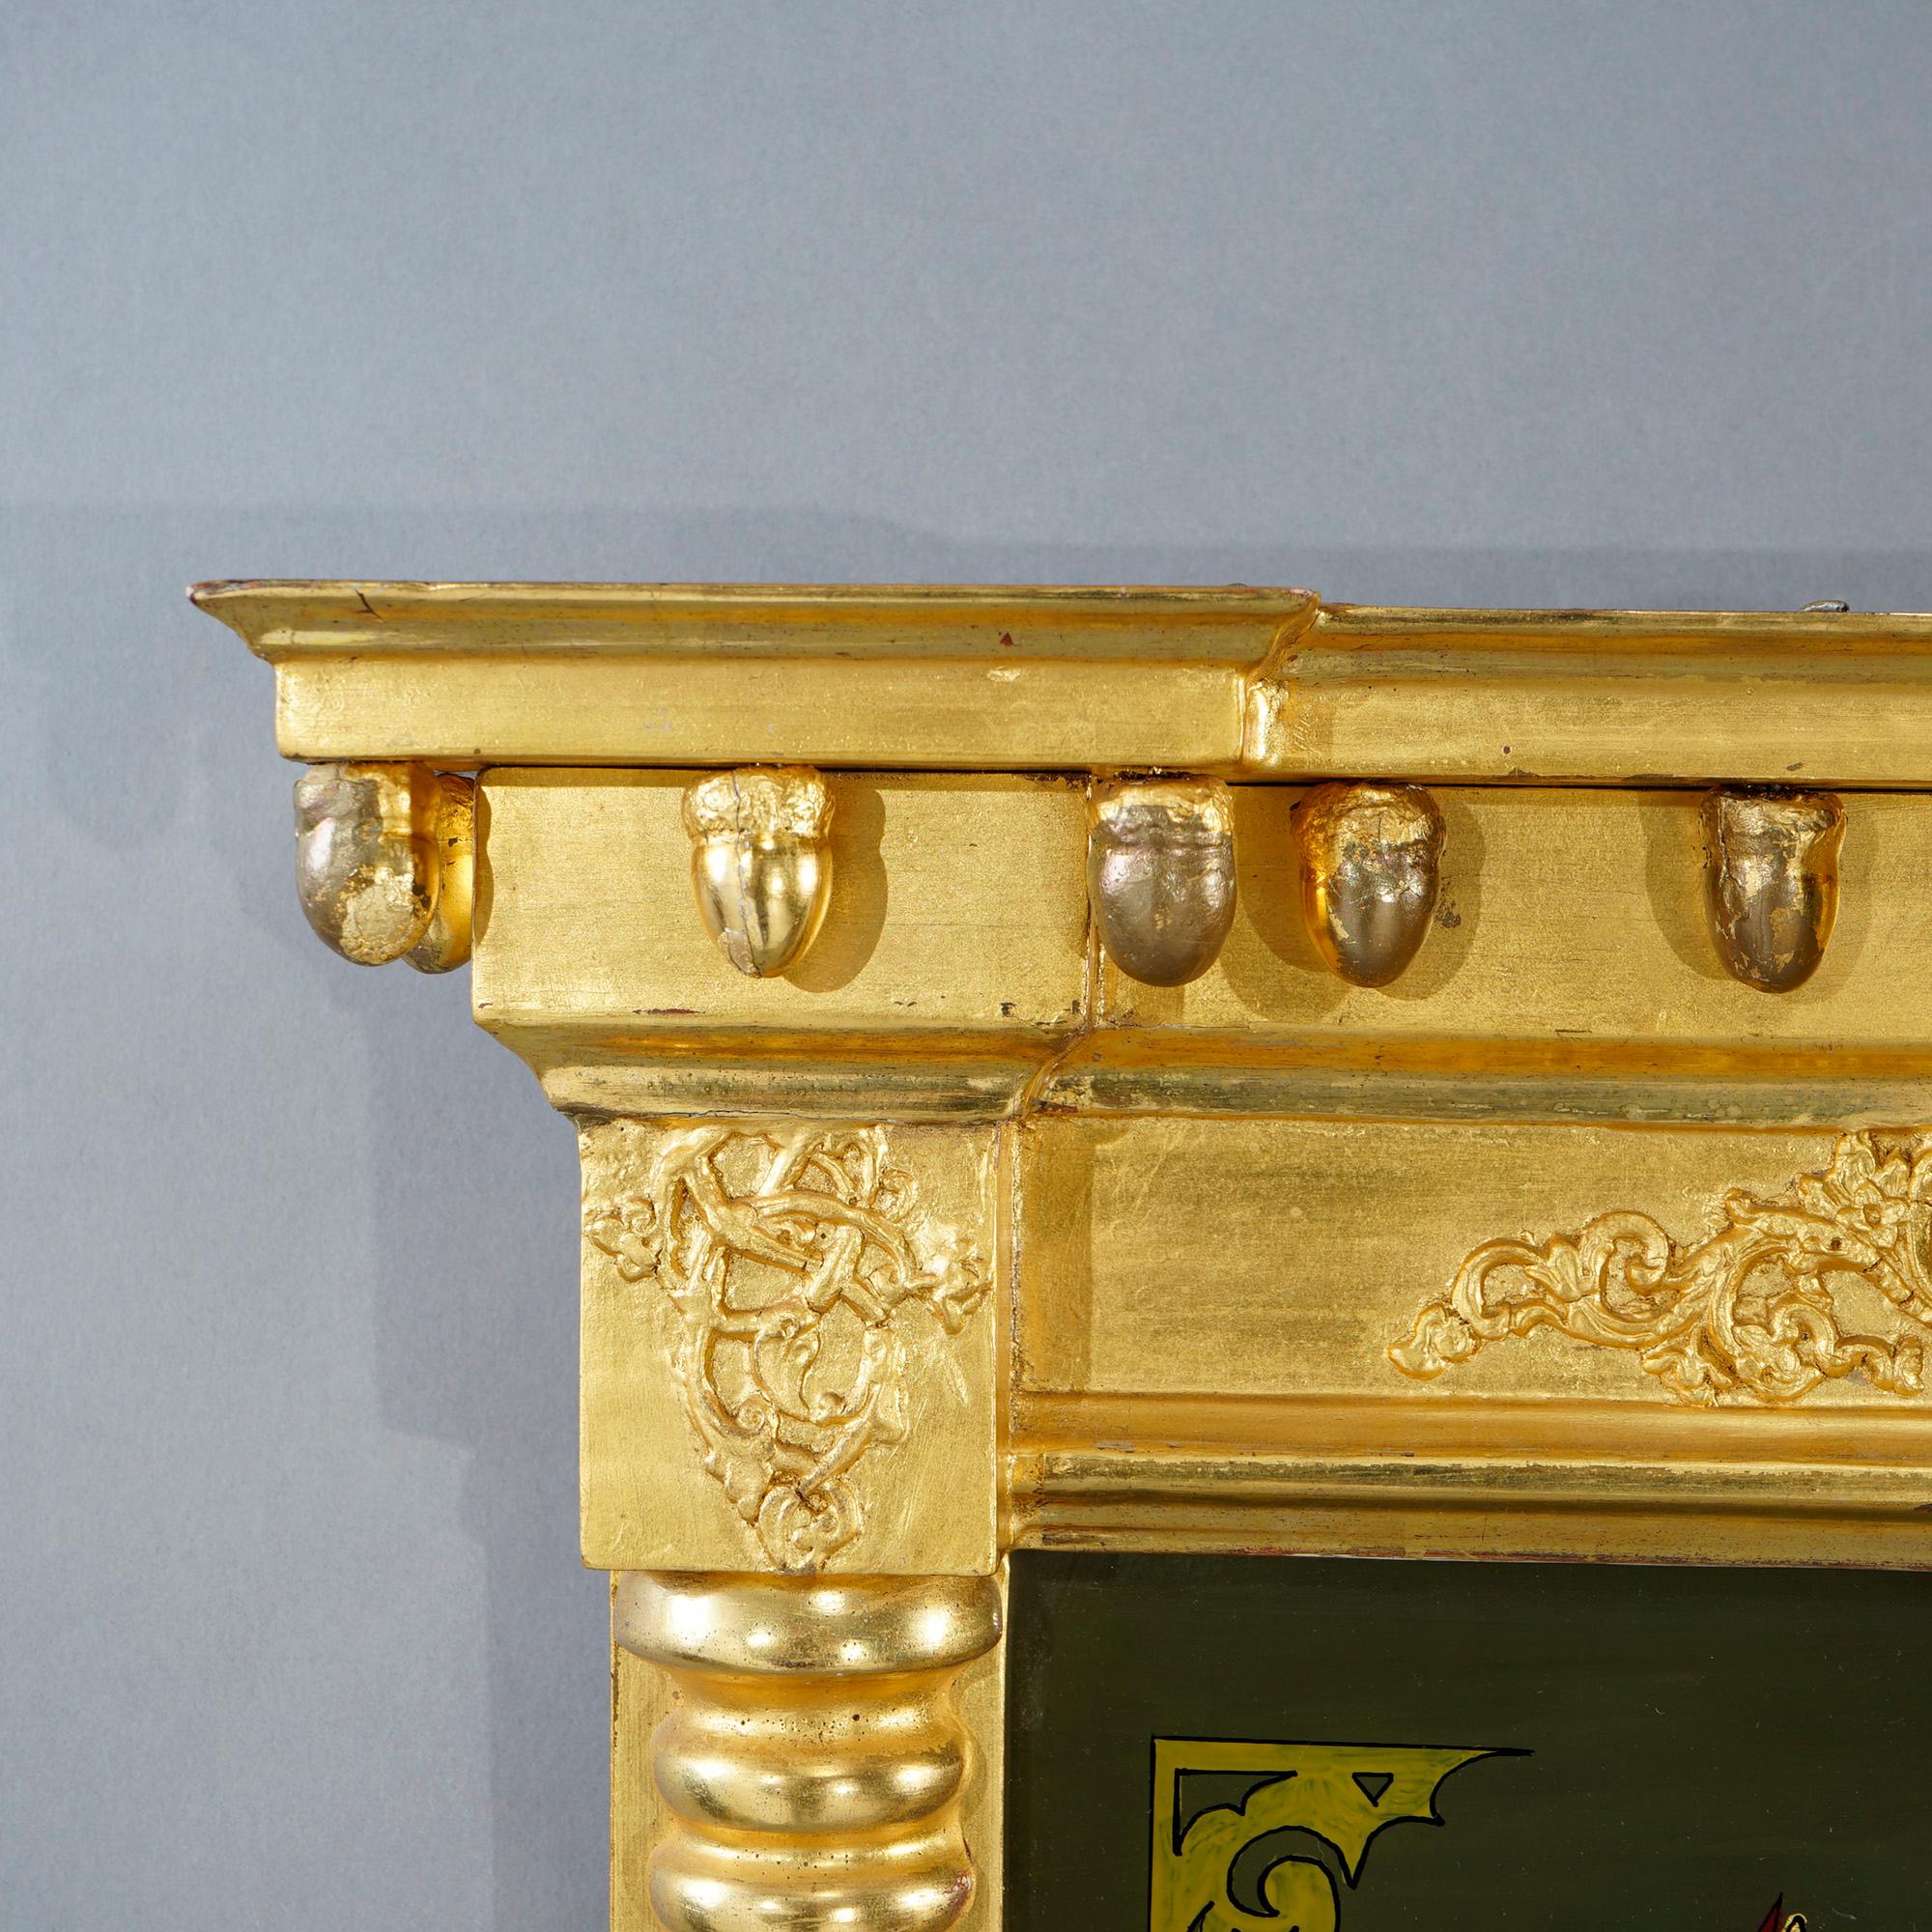 Ein antiker amerikanischer Empire-Trumeau-Spiegel bietet einen Rahmen aus vergoldetem Holz in Säulenform, dessen Oberteil ein rückseitig bemaltes Blumenstillleben aufweist, 19. Jahrhundert.

Maße - 34,5''H x 18,5''W x 3,5''D.